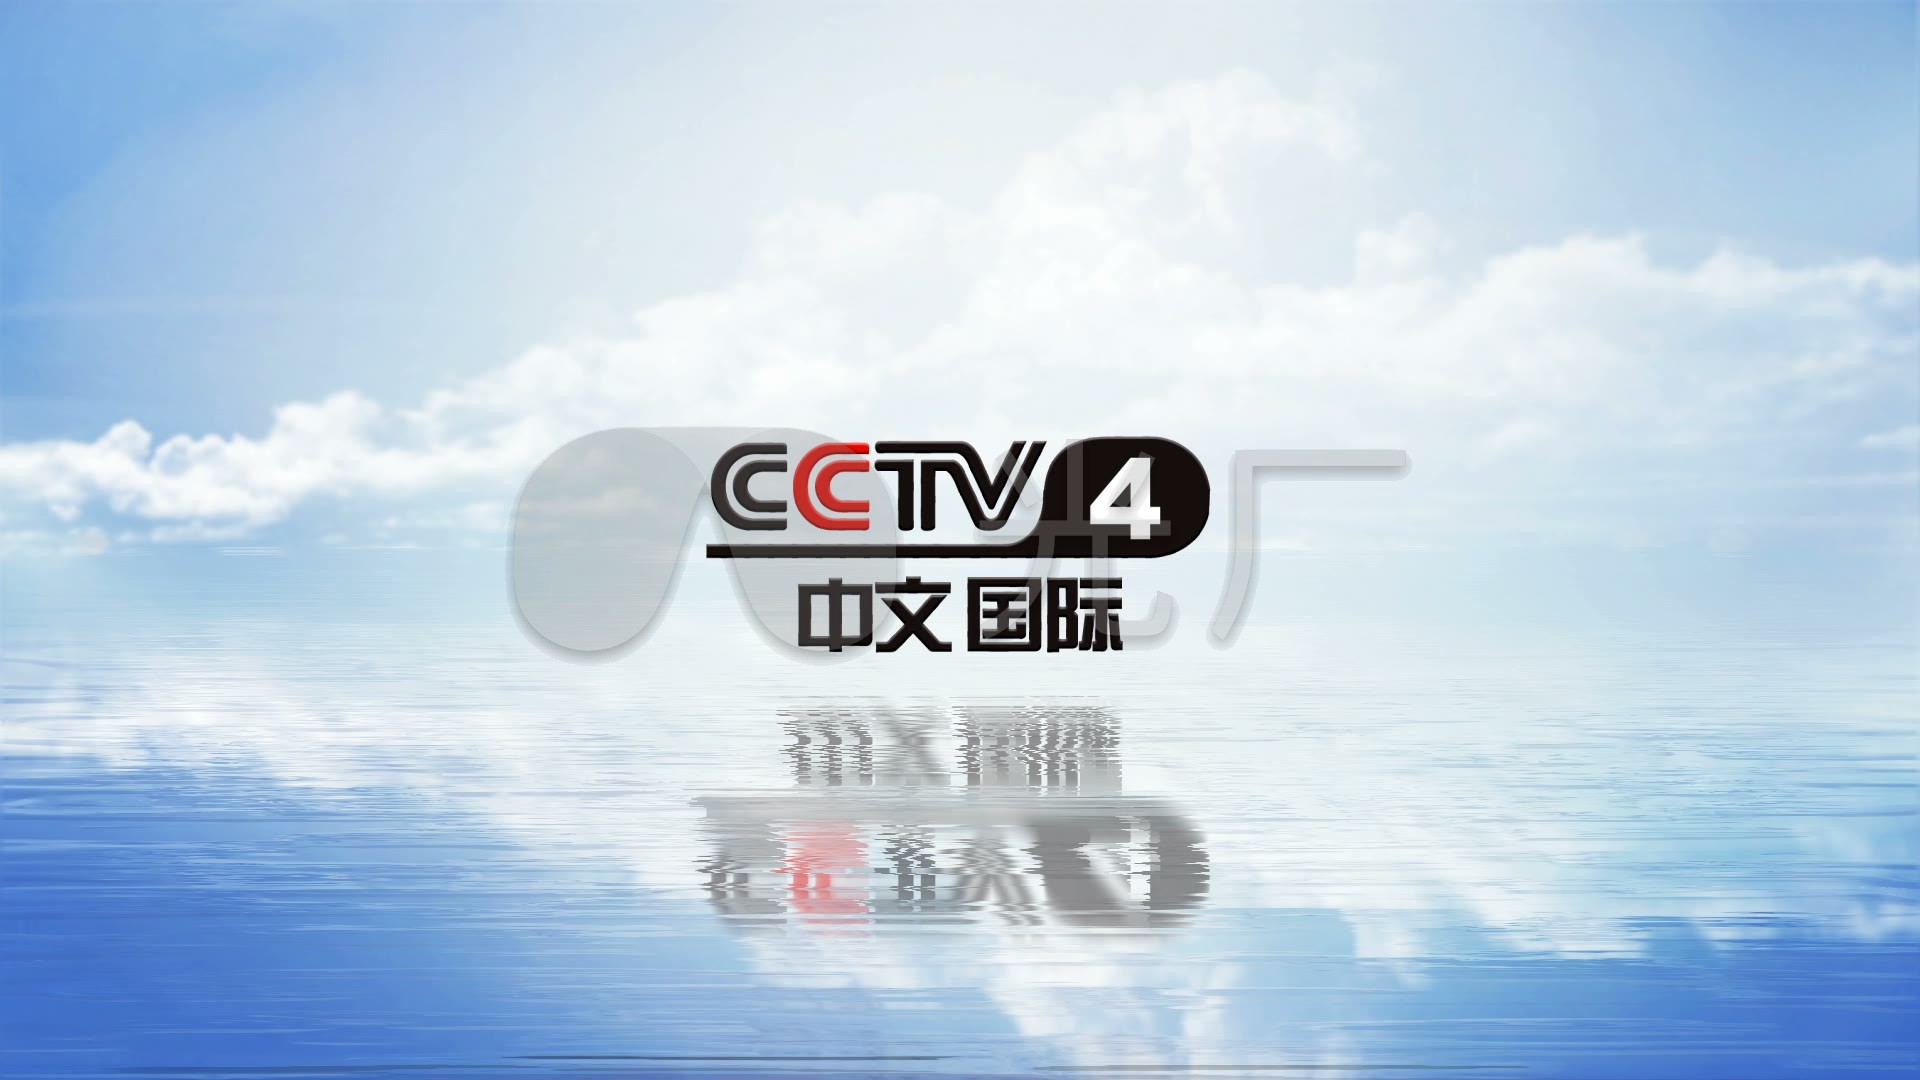 自制cctv4中文国际频道logo